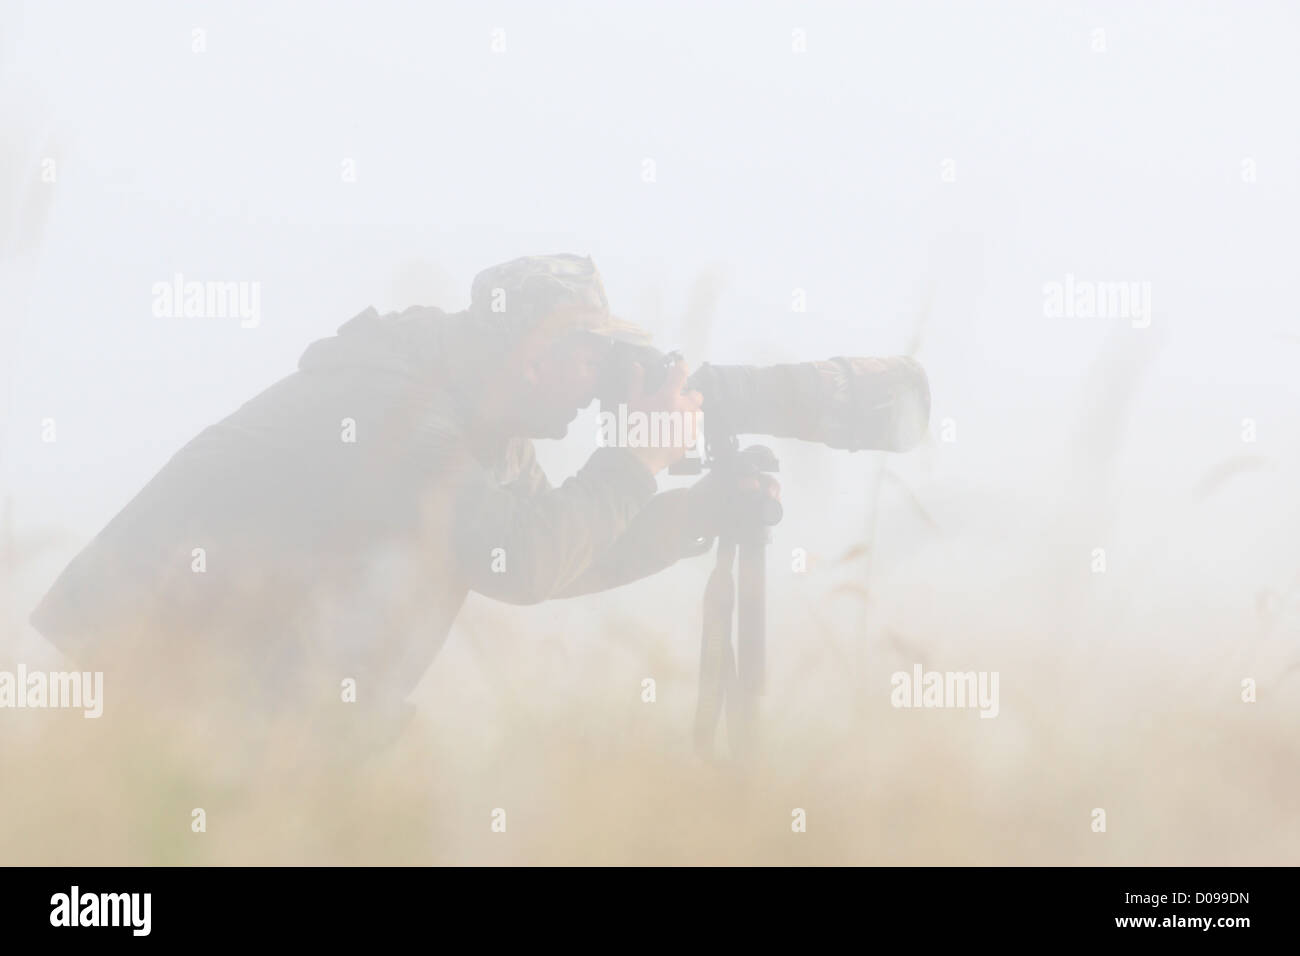 Wildlife Photographer tomando una fotografía en una espesa niebla. Foto de stock